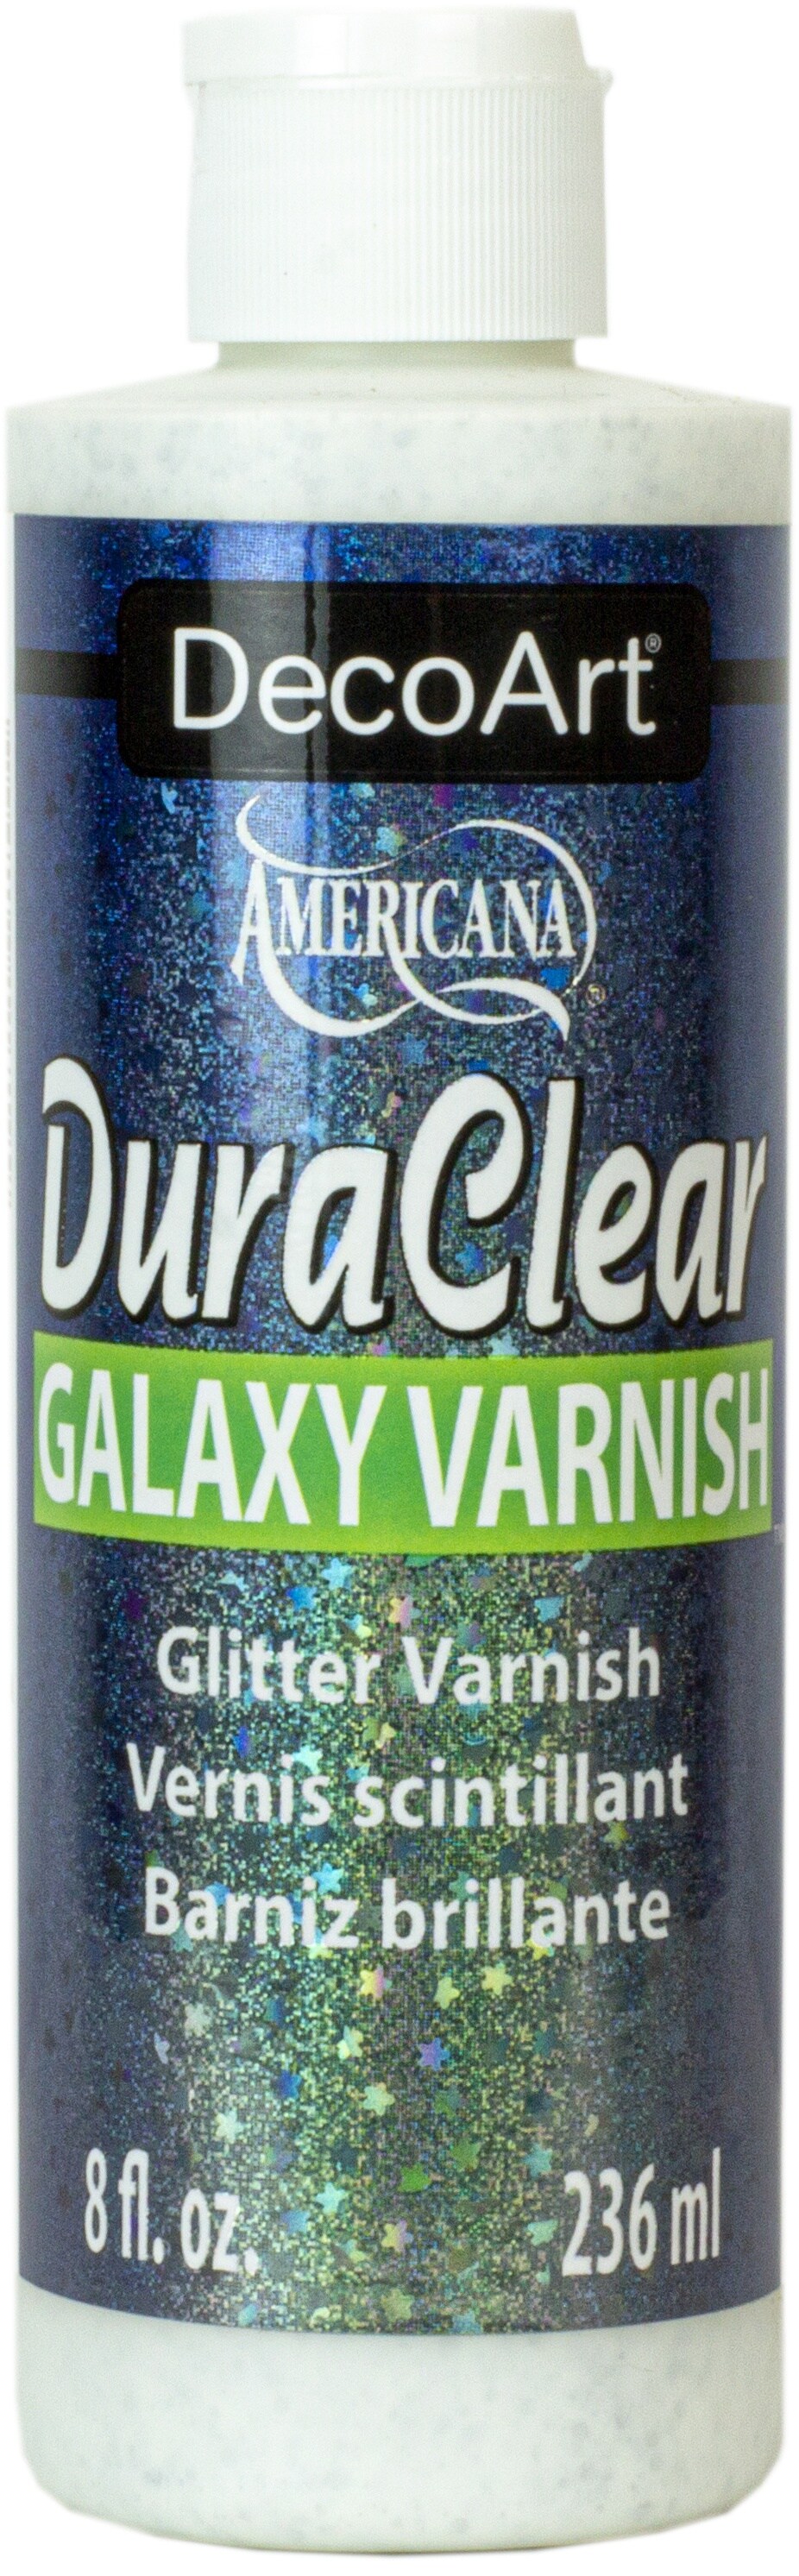  DecoArt DuraClear Galaxy Varnish 8oz-Glitter : Tools & Home  Improvement